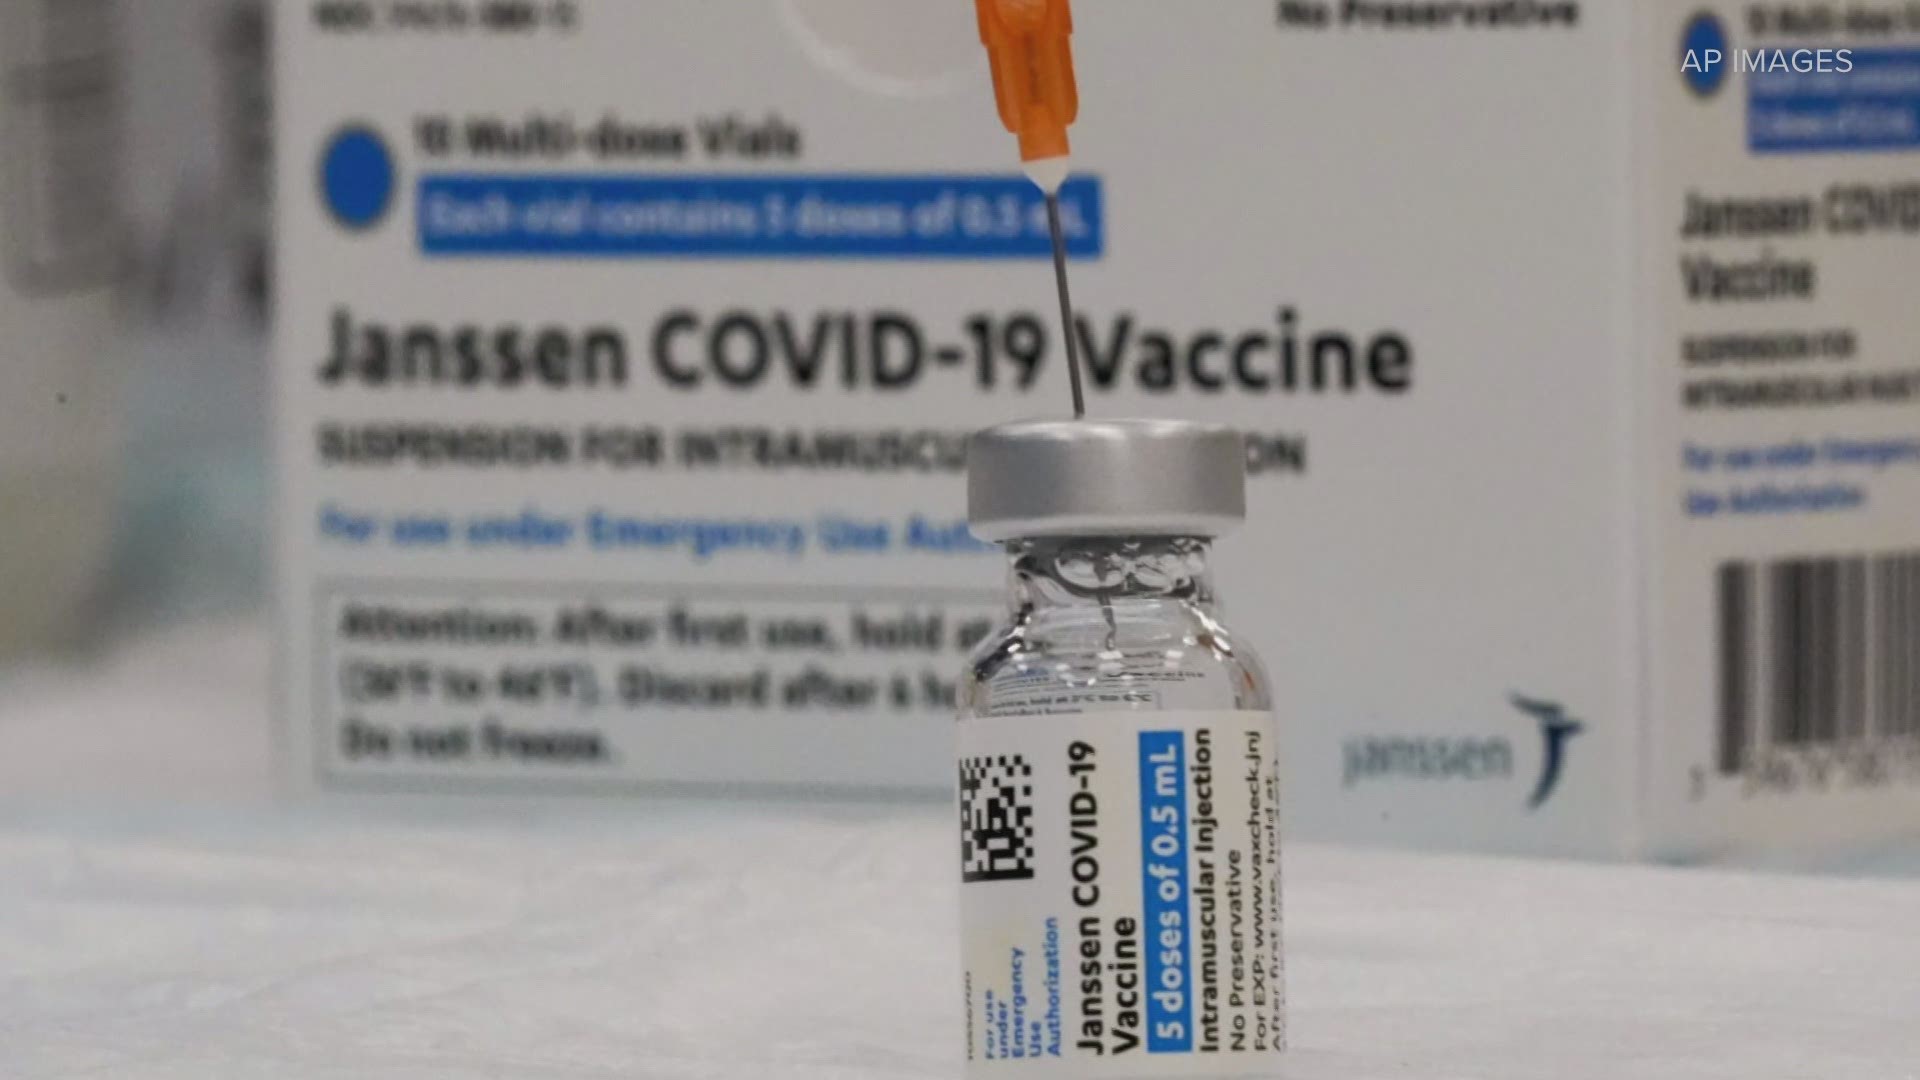 Johnson & Johnson Covid-19 vaccine